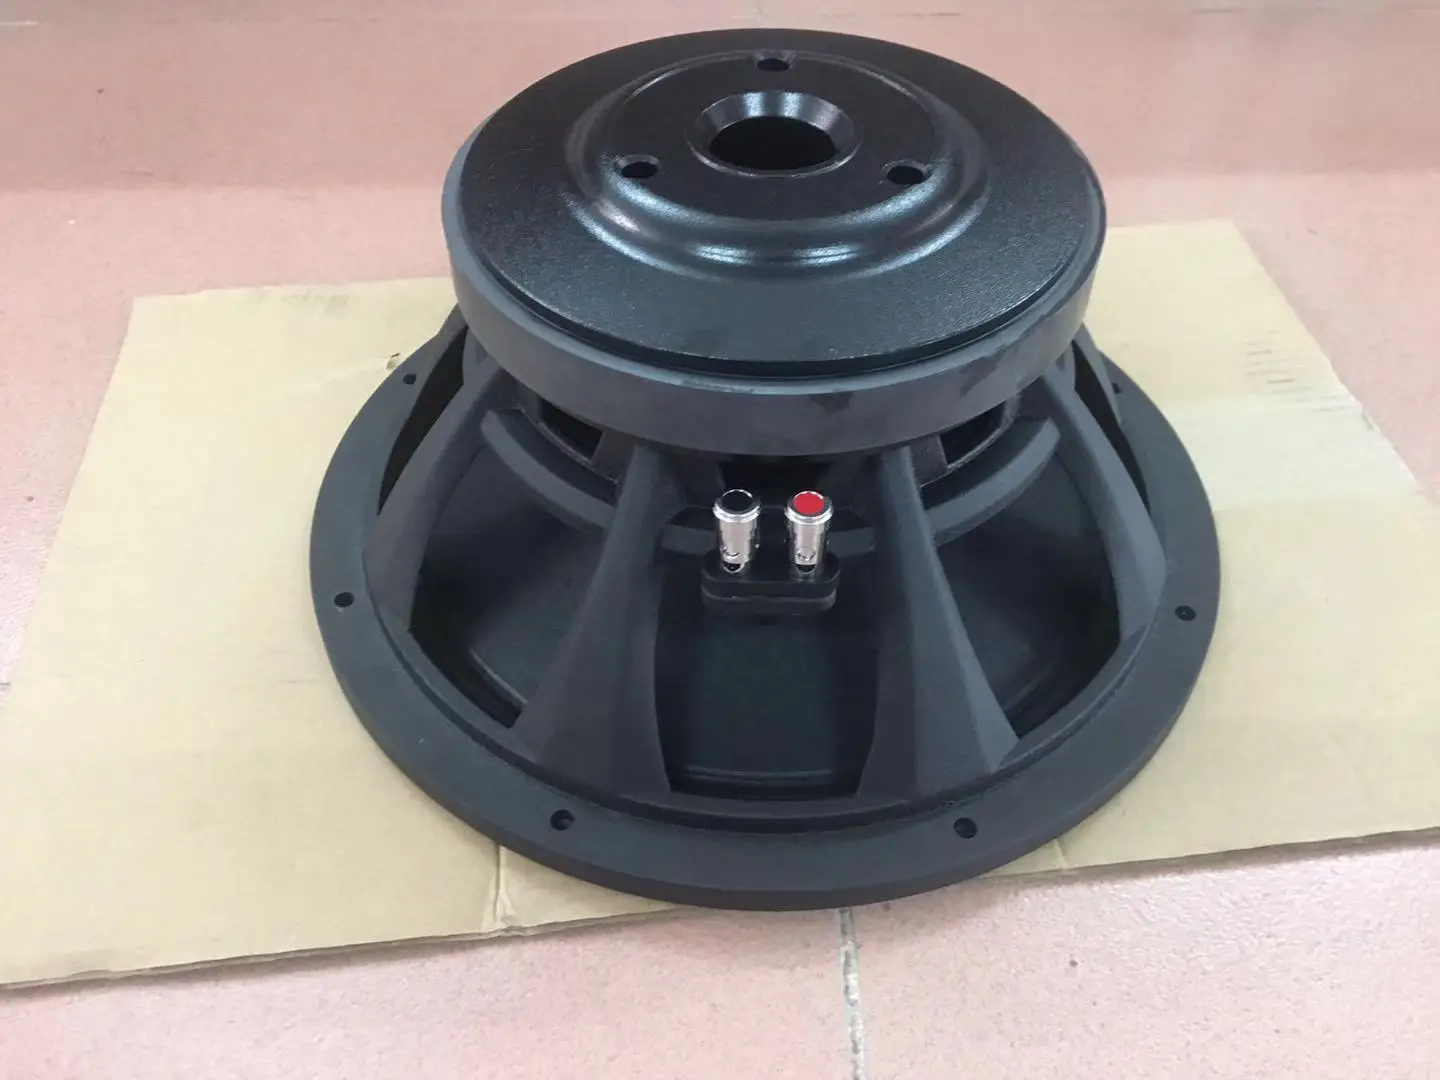 12 inch speaker price jbl